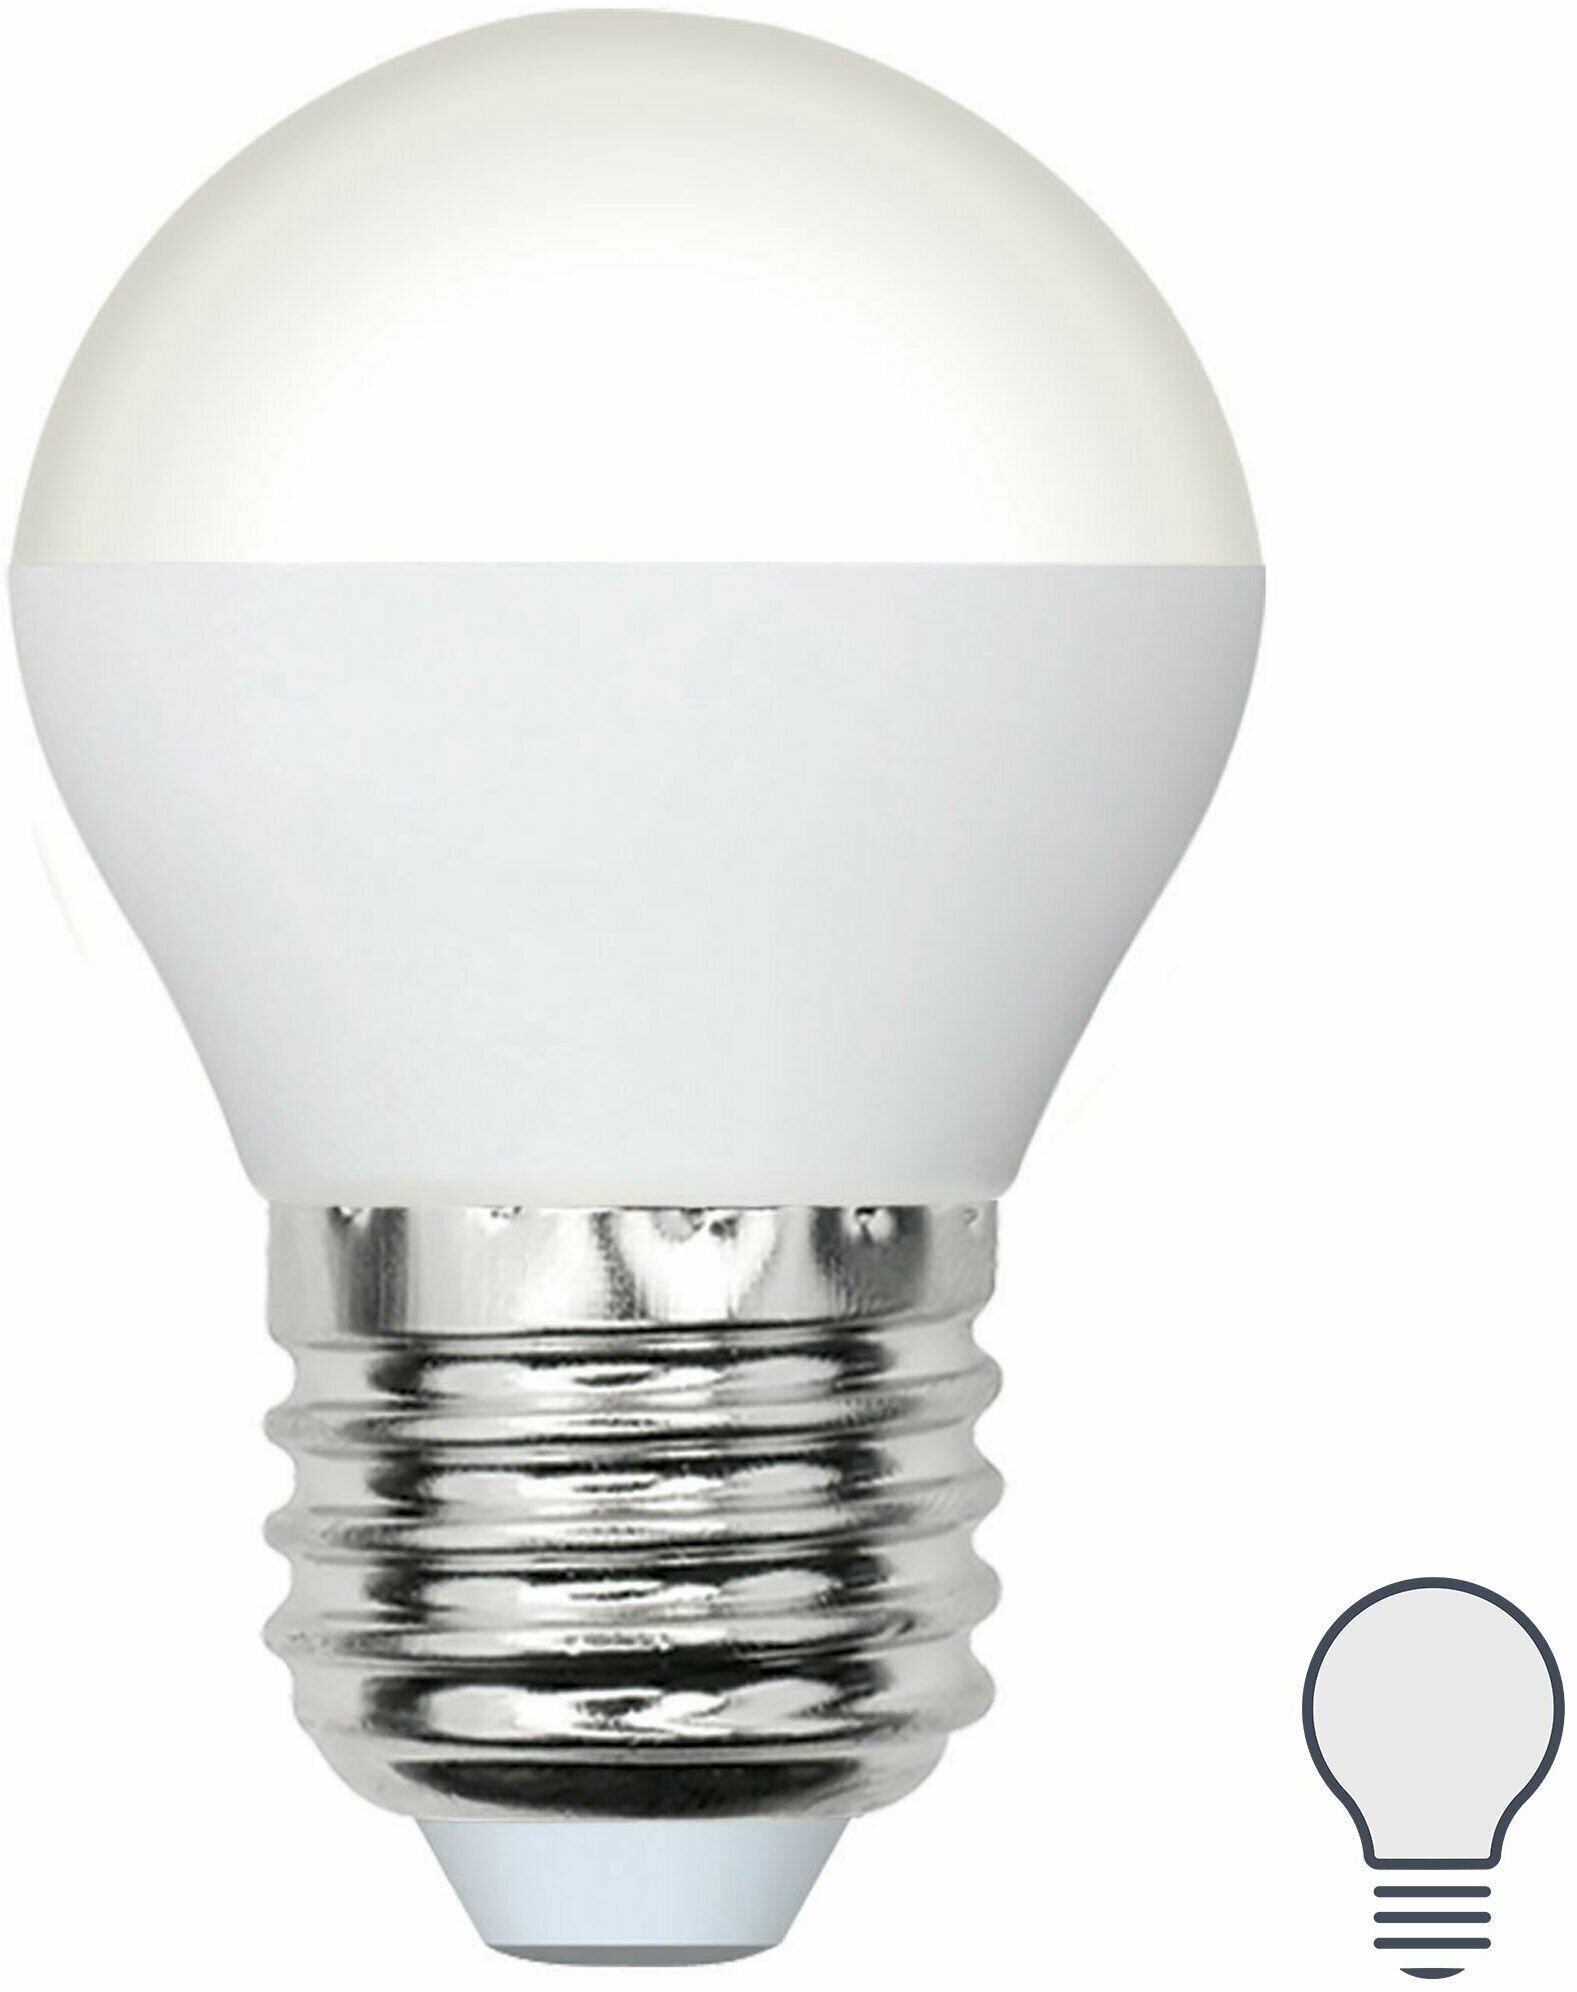 Лампа Volpe Е27 6 Вт DIM шар матовая 600 Лм холодный свет